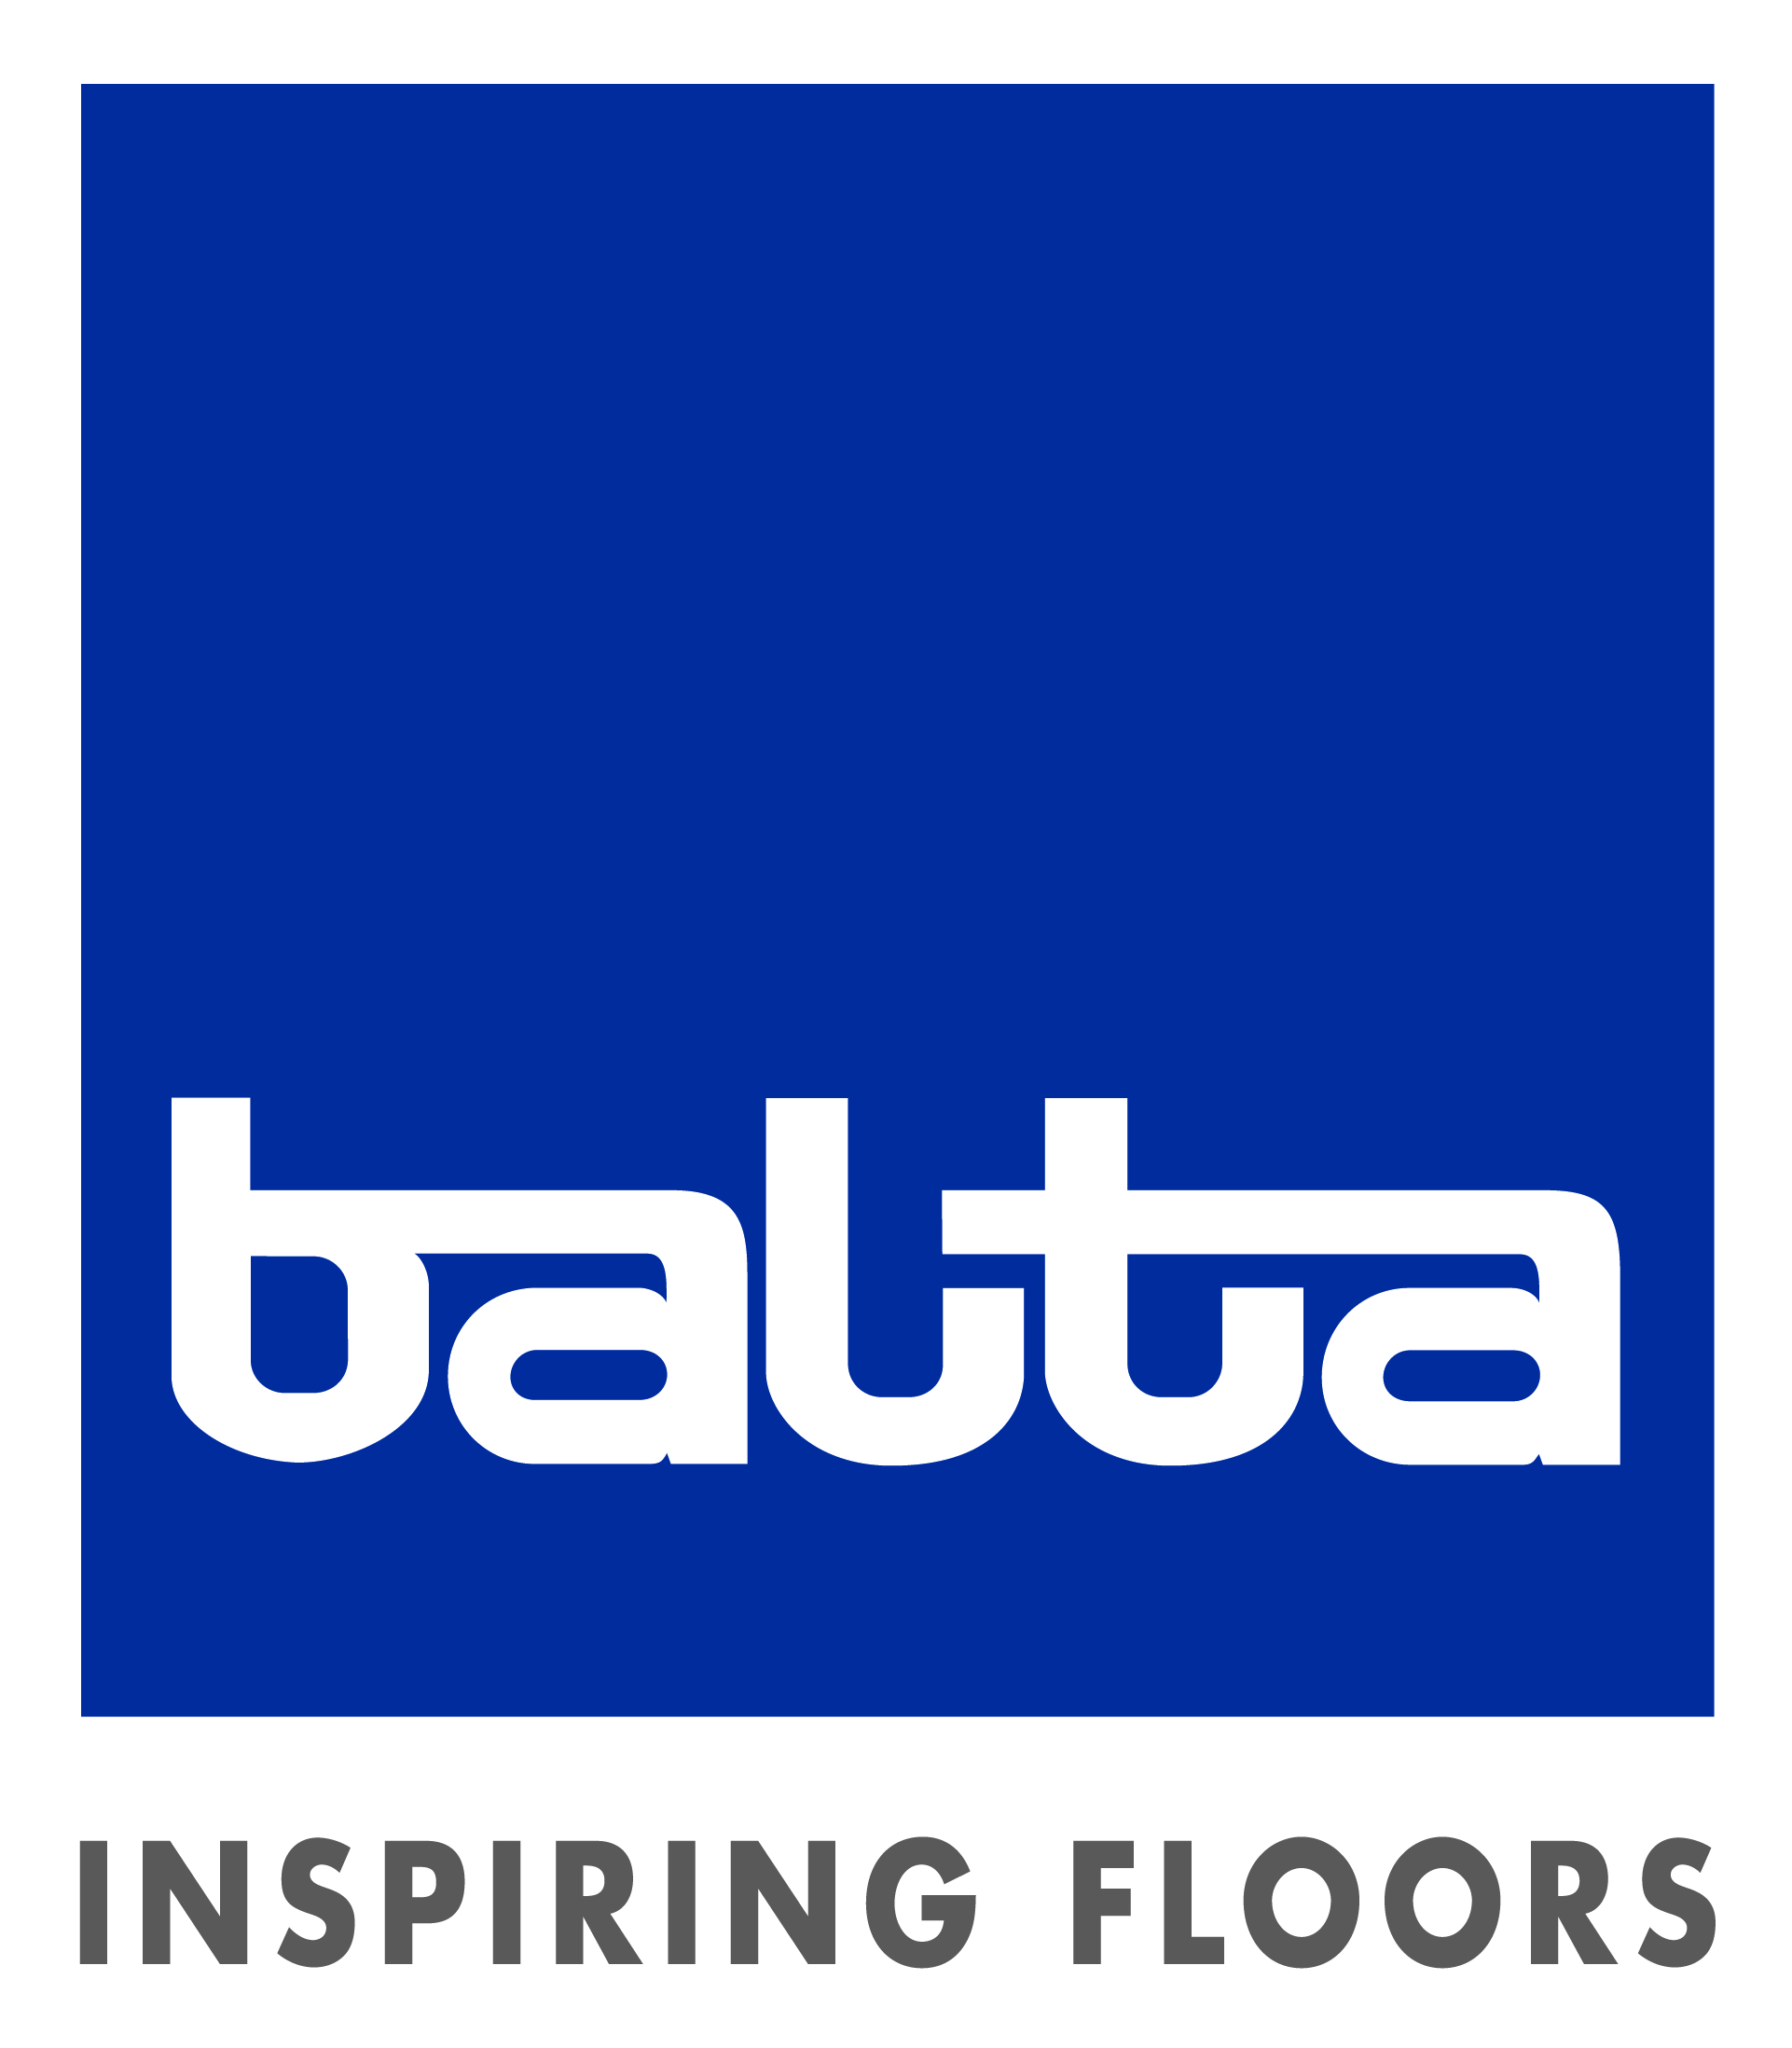 Balta-INSPIRING-FLOORS